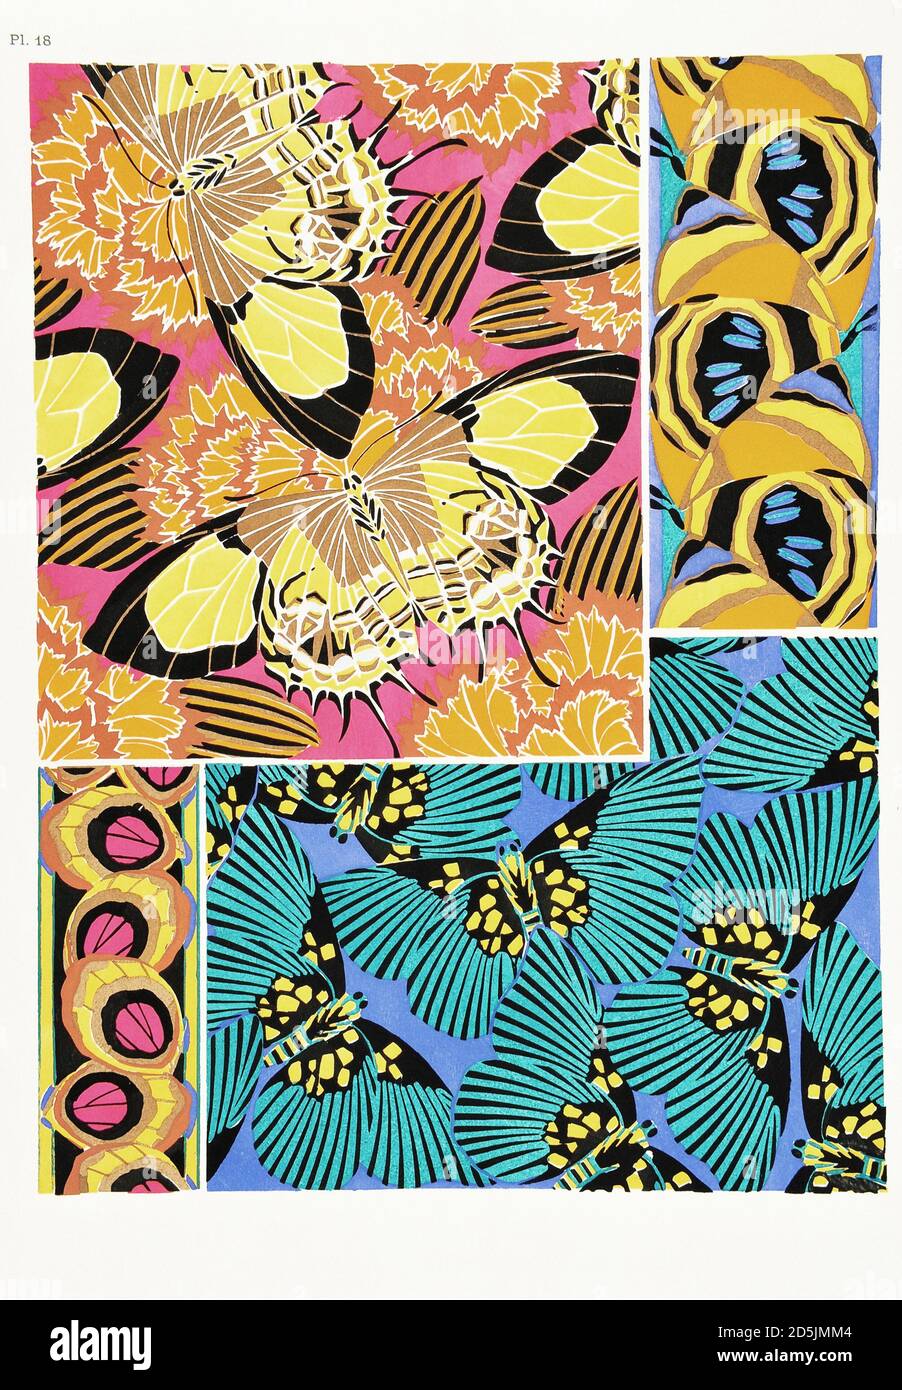 Papillons : vingt panneaux de phototype colorés au motif. PL XVIII Depuis le livre d'Emile-Allain Seguy (1877-1951). Paris, France. 1925 Banque D'Images